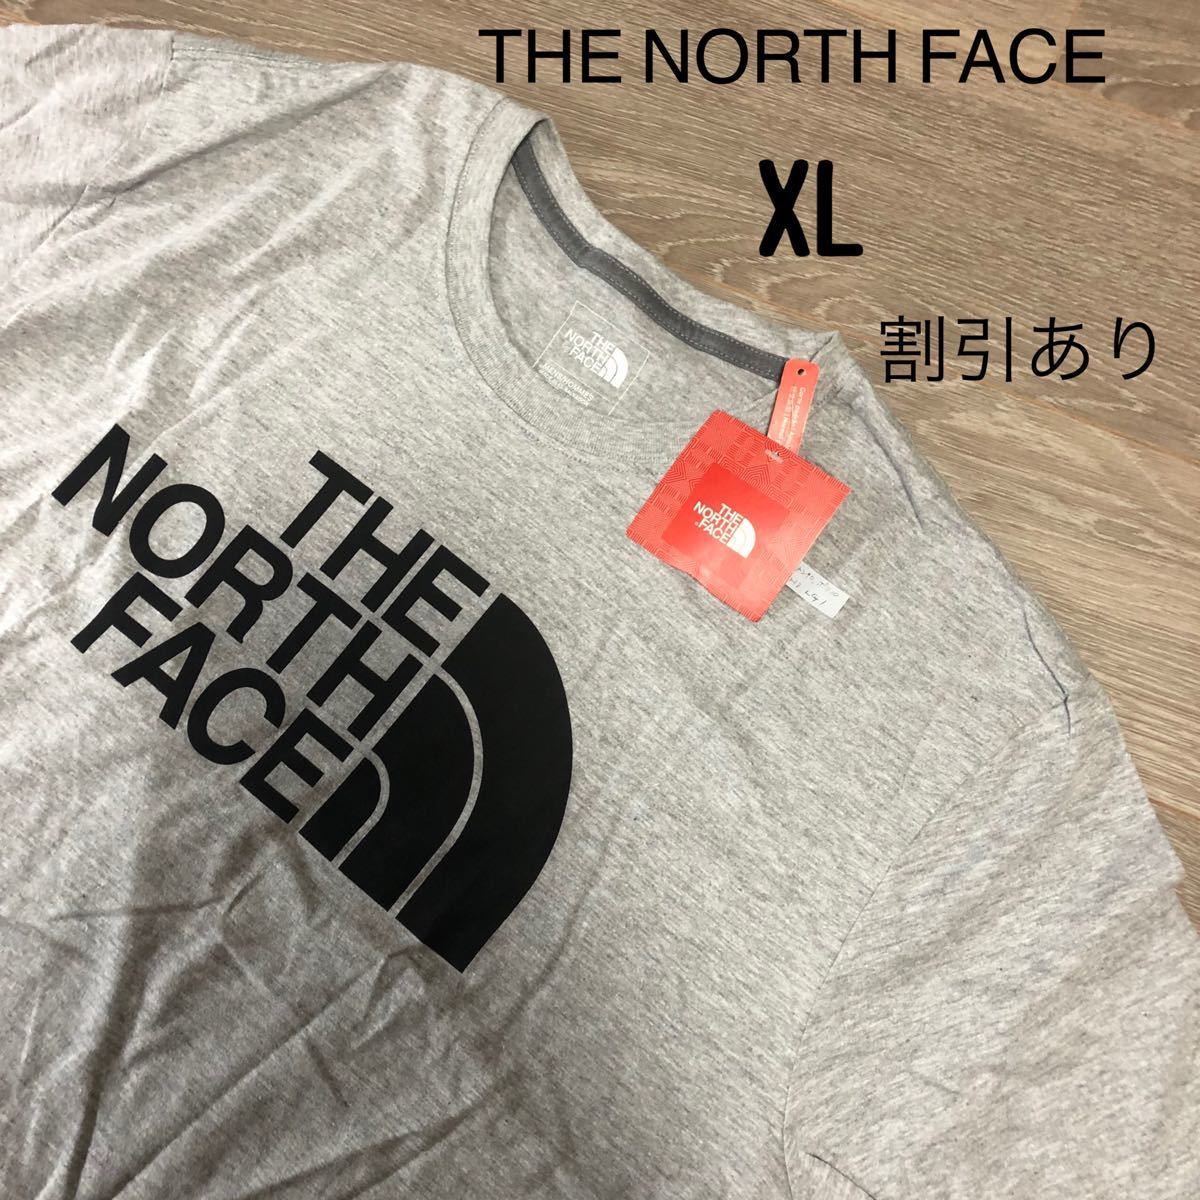 THE NORTH FACE ザノースフェイス ノースフェイスTシャツ ハーフドーム アメリカ 日本未発売 ロゴTシャツ Tシャツ